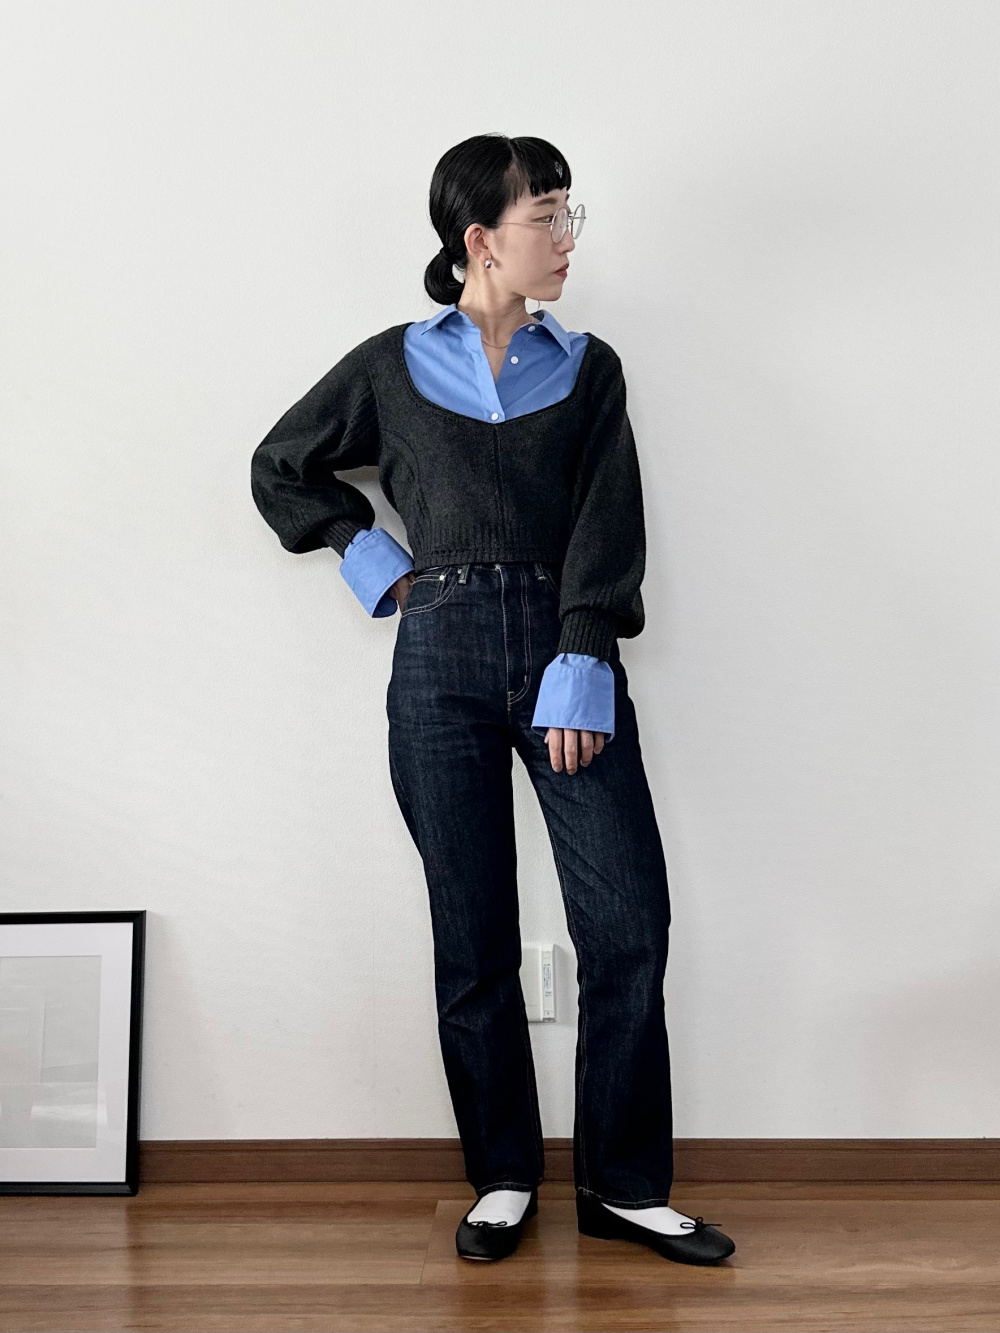 3Dボリュームスリーブセーター（長袖）、3Dリブニットブラ」の着用 